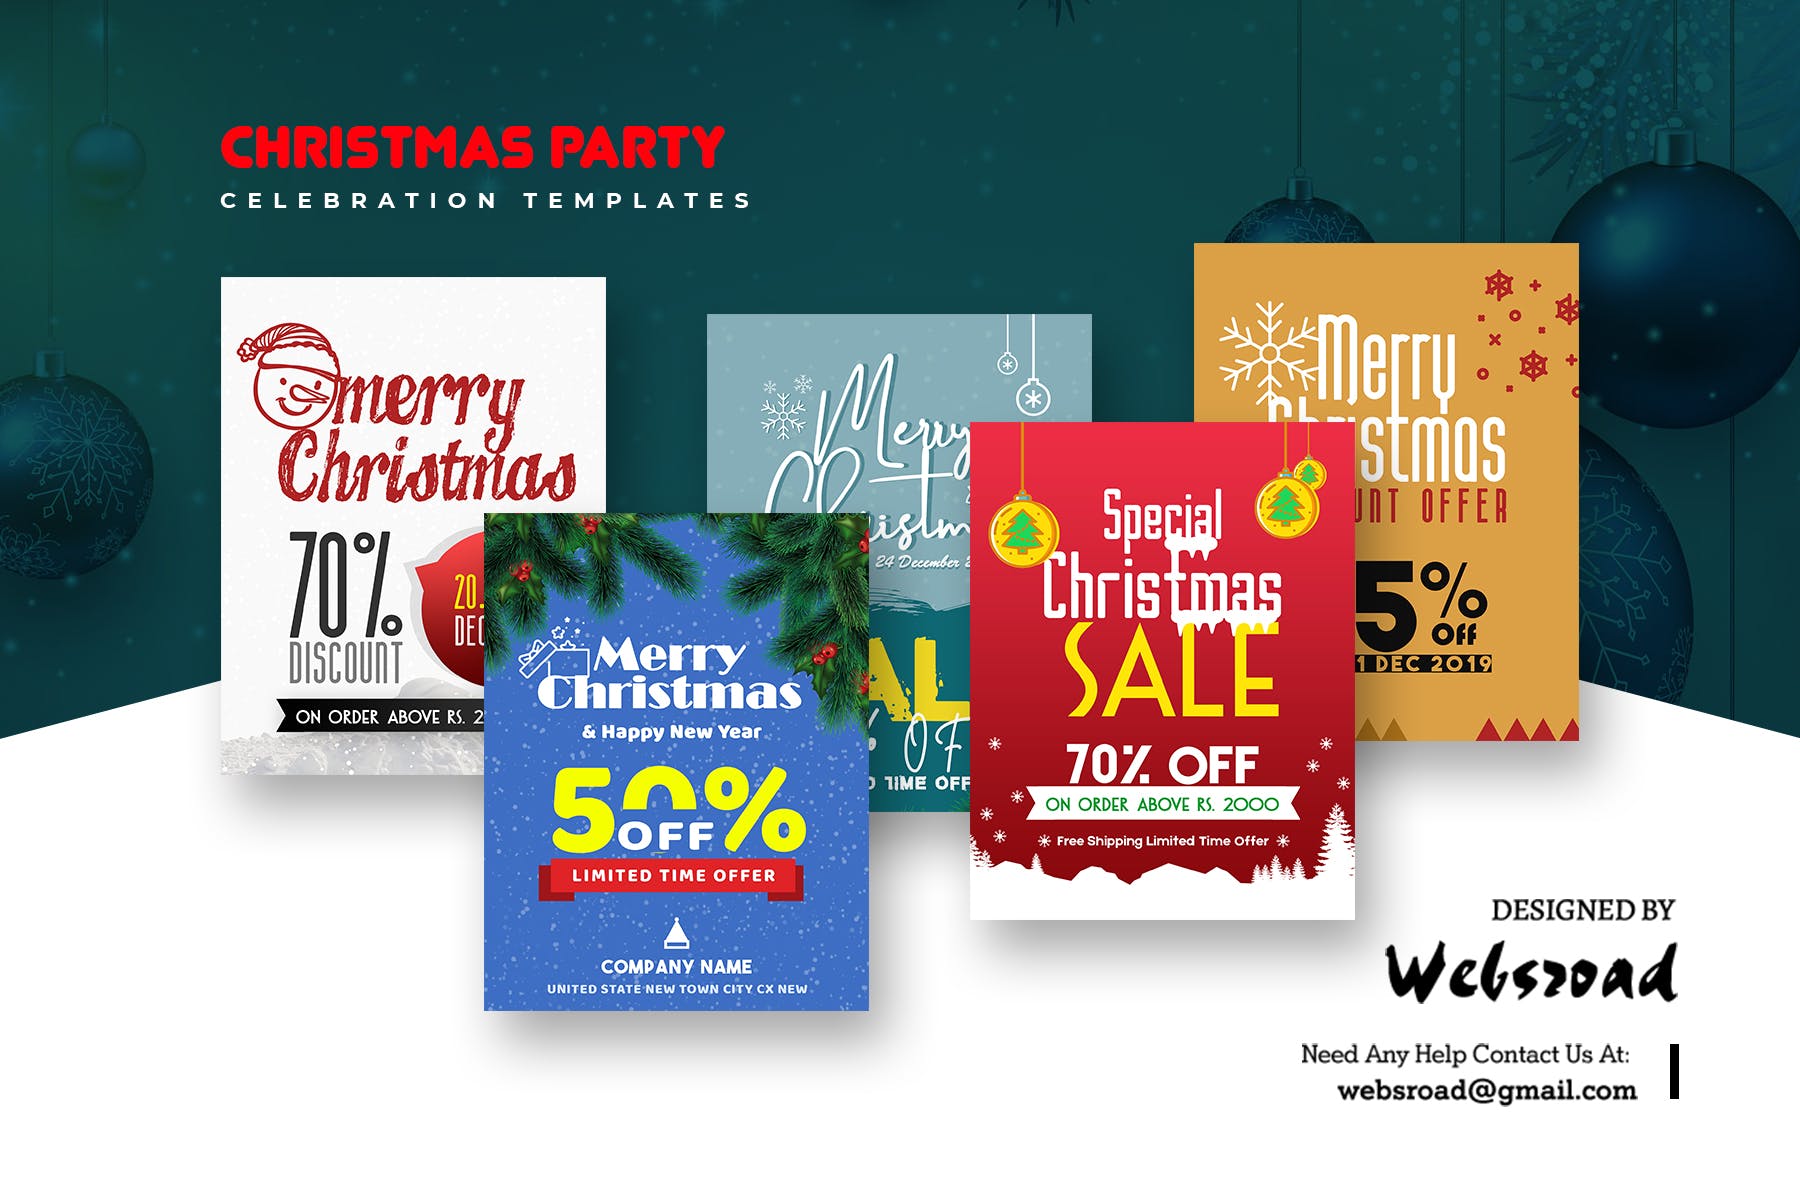 圣诞节主题促销活动16设计网精选广告模板合集 Christmas Party Celebration Templates插图